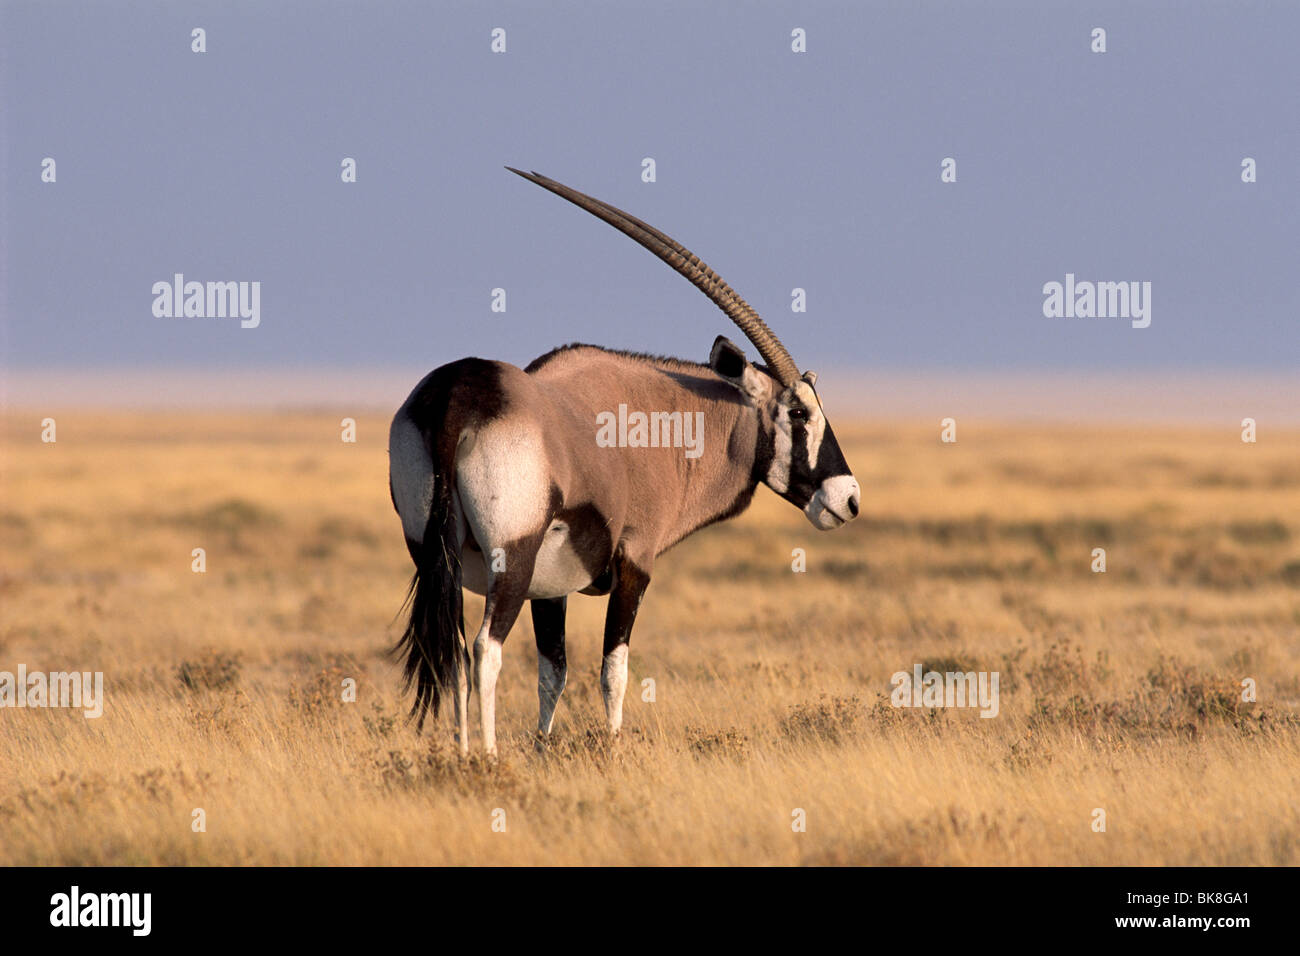 Gemsbok (Oryx gazella), Etosha National Park, Namibie, Afrique Banque D'Images